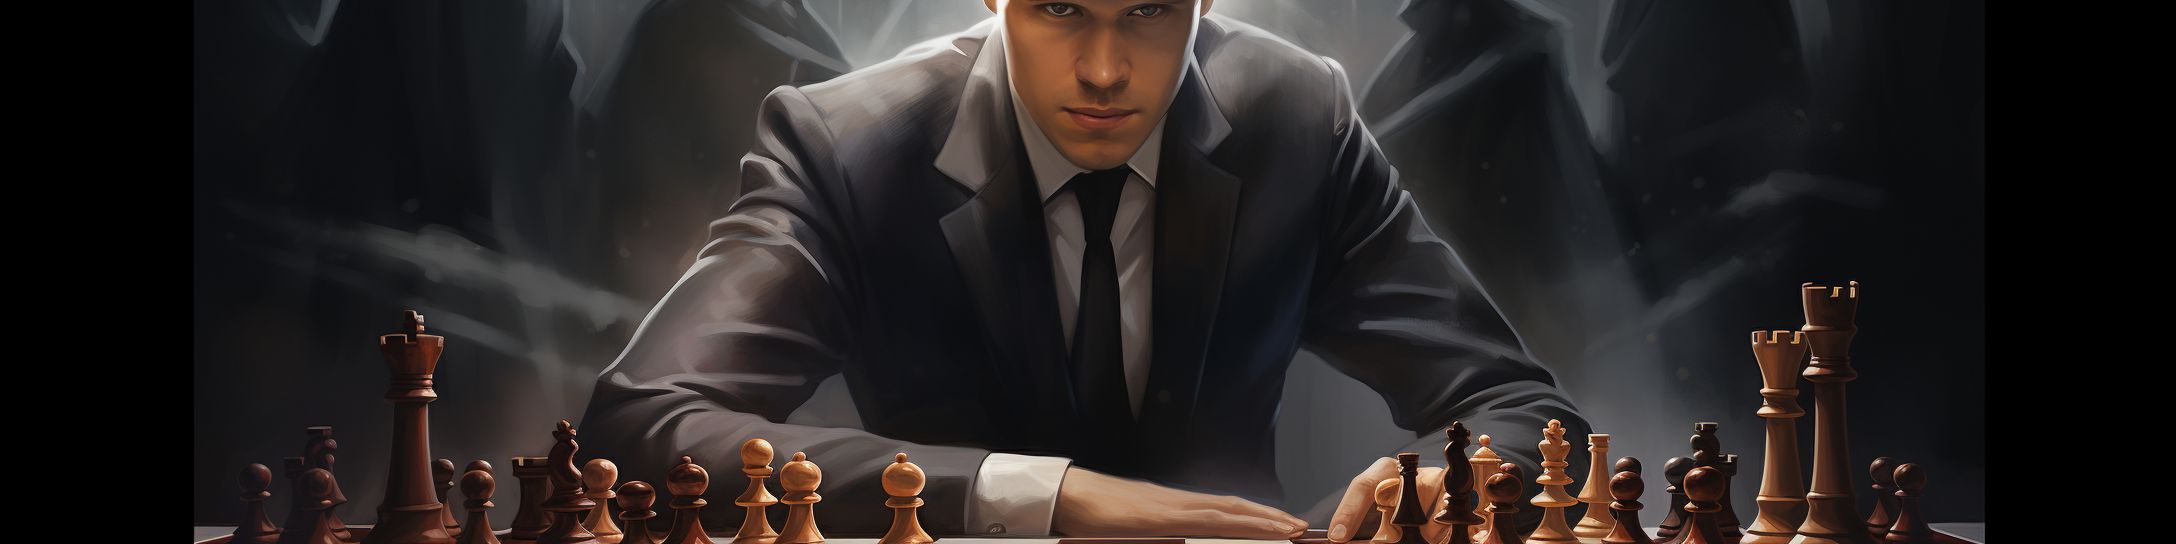 Les épreuves et adversaires mémorables de Carlsen